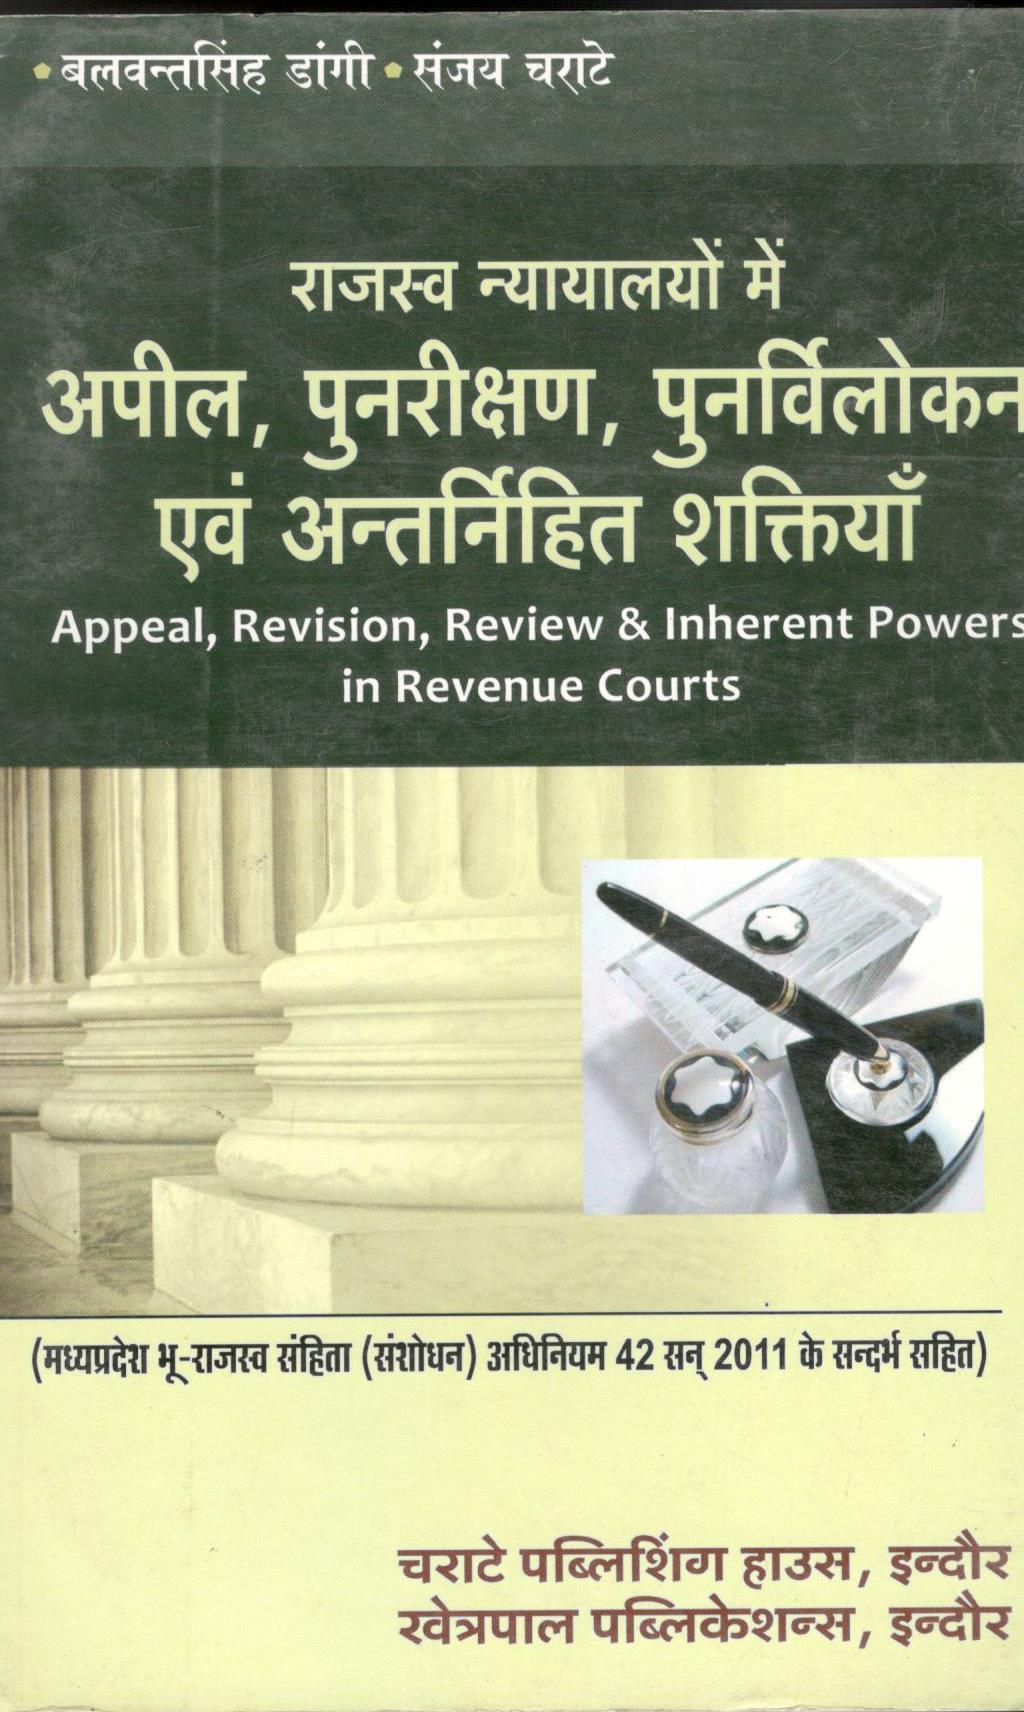 बलवंत सिंह डांगी, संजय चराटे - राजस्व न्यायालयों में अपील, पुनरीक्षण, पुनर्विलोकन एवं अंतर्निहित शक्तियाँ / Appeal, Revision, Review &  Inherent Powers in Revenue Courts